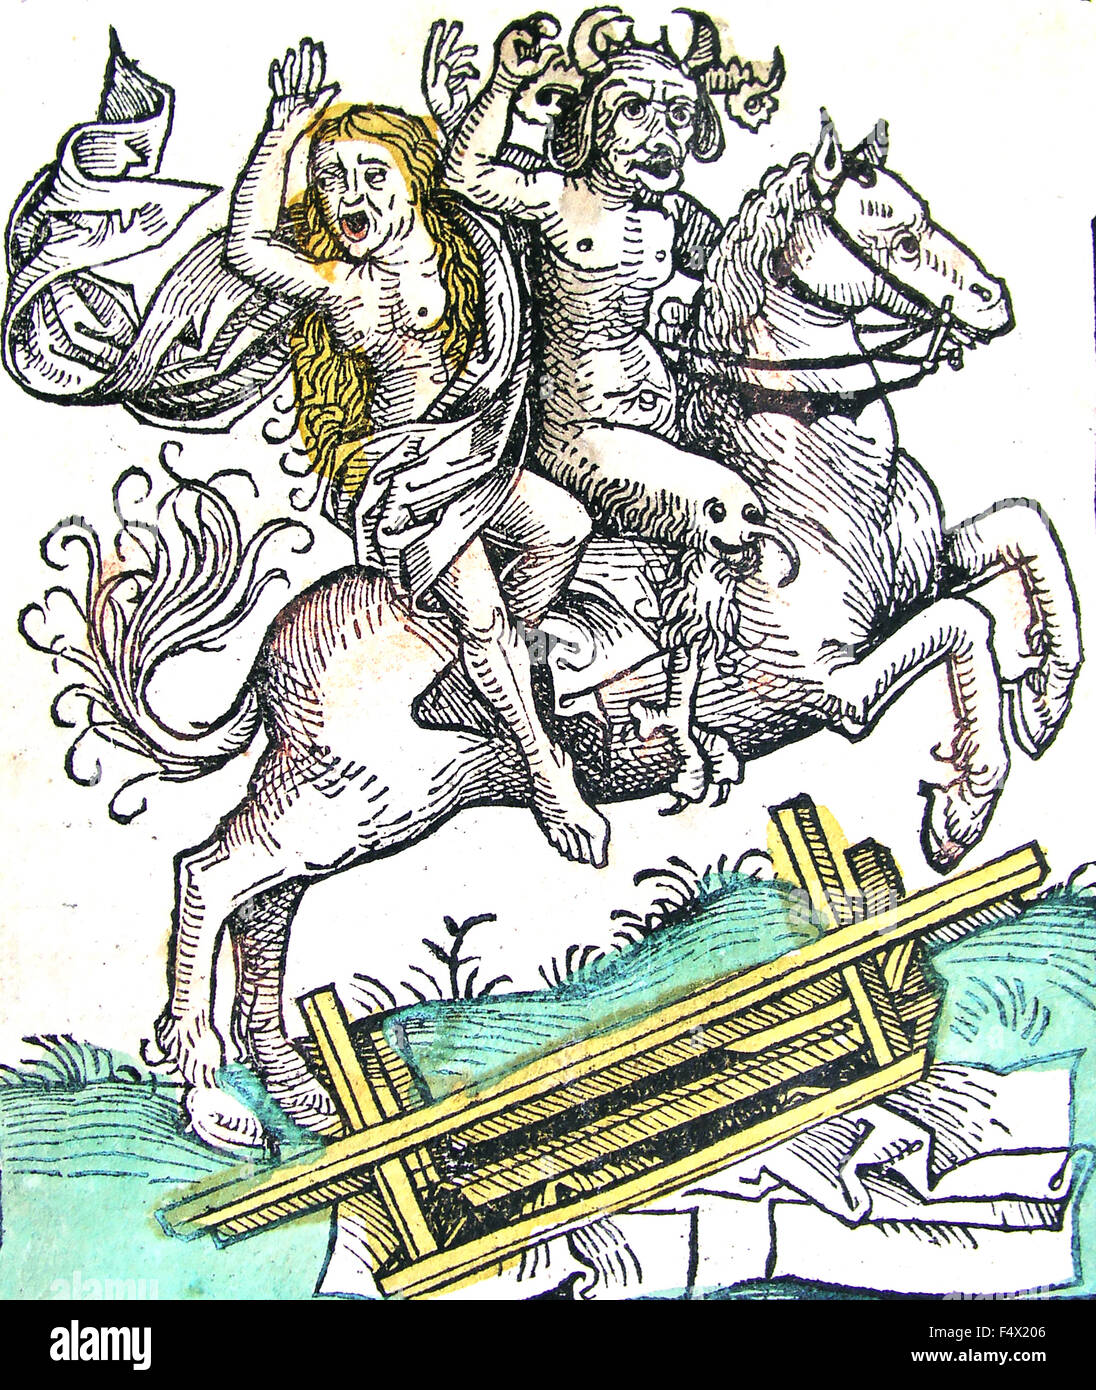 La Chronique de Nuremberg, 15e siècle, la gravure sur bois d'une sorcière et de diable sur l'crosing un pont Banque D'Images